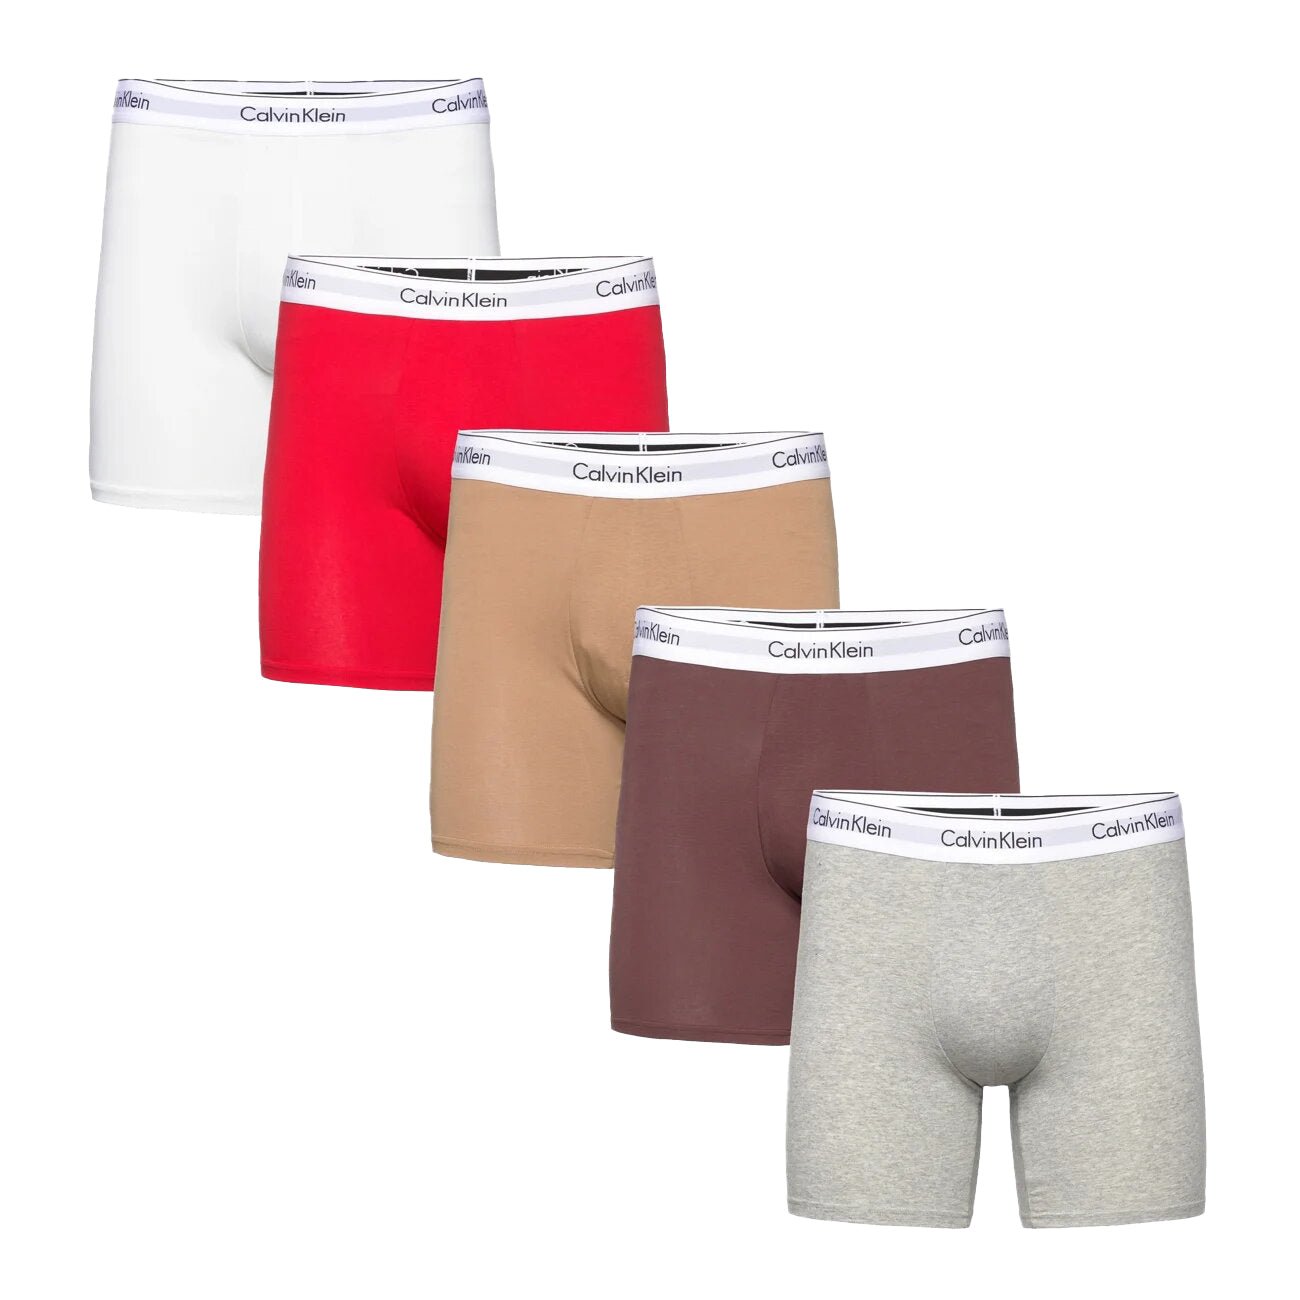 Calvin Klein Modern Cotton Stretch Boxers White,Red,Beige,Brown,Grey (5  Pack), Boinclo ltd